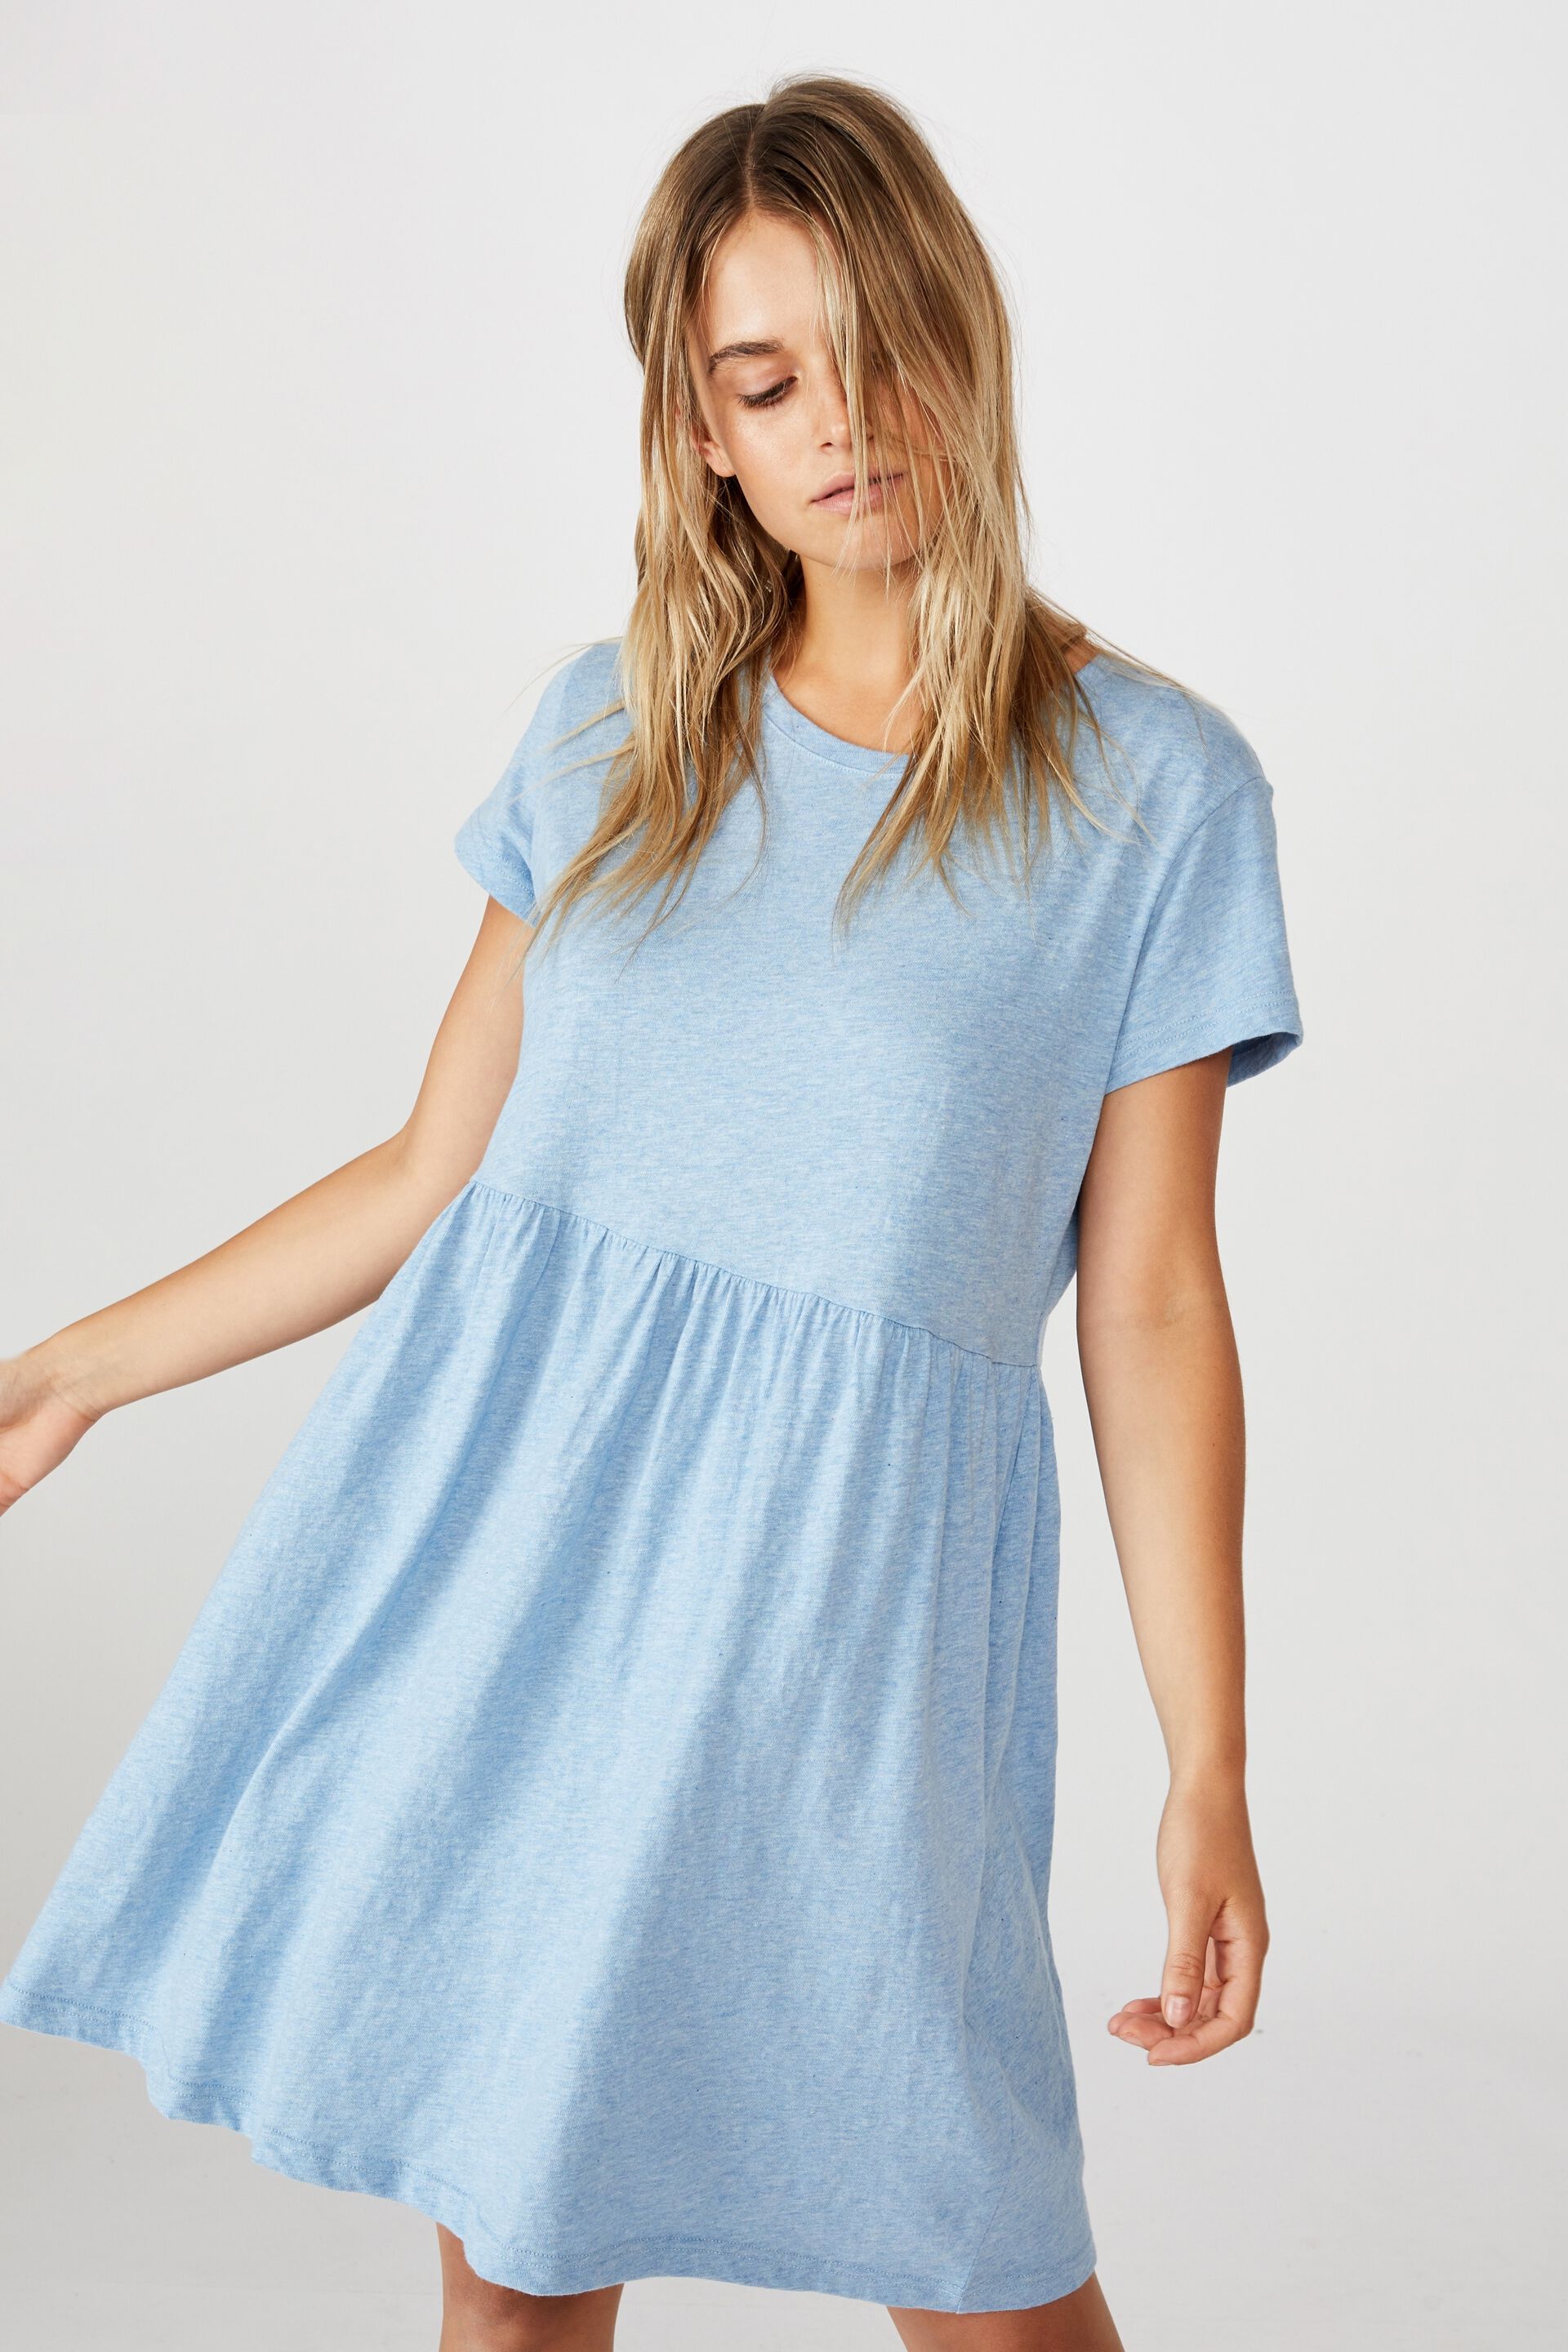 Blue T Shirt Dress Shop, 59% OFF | www ...